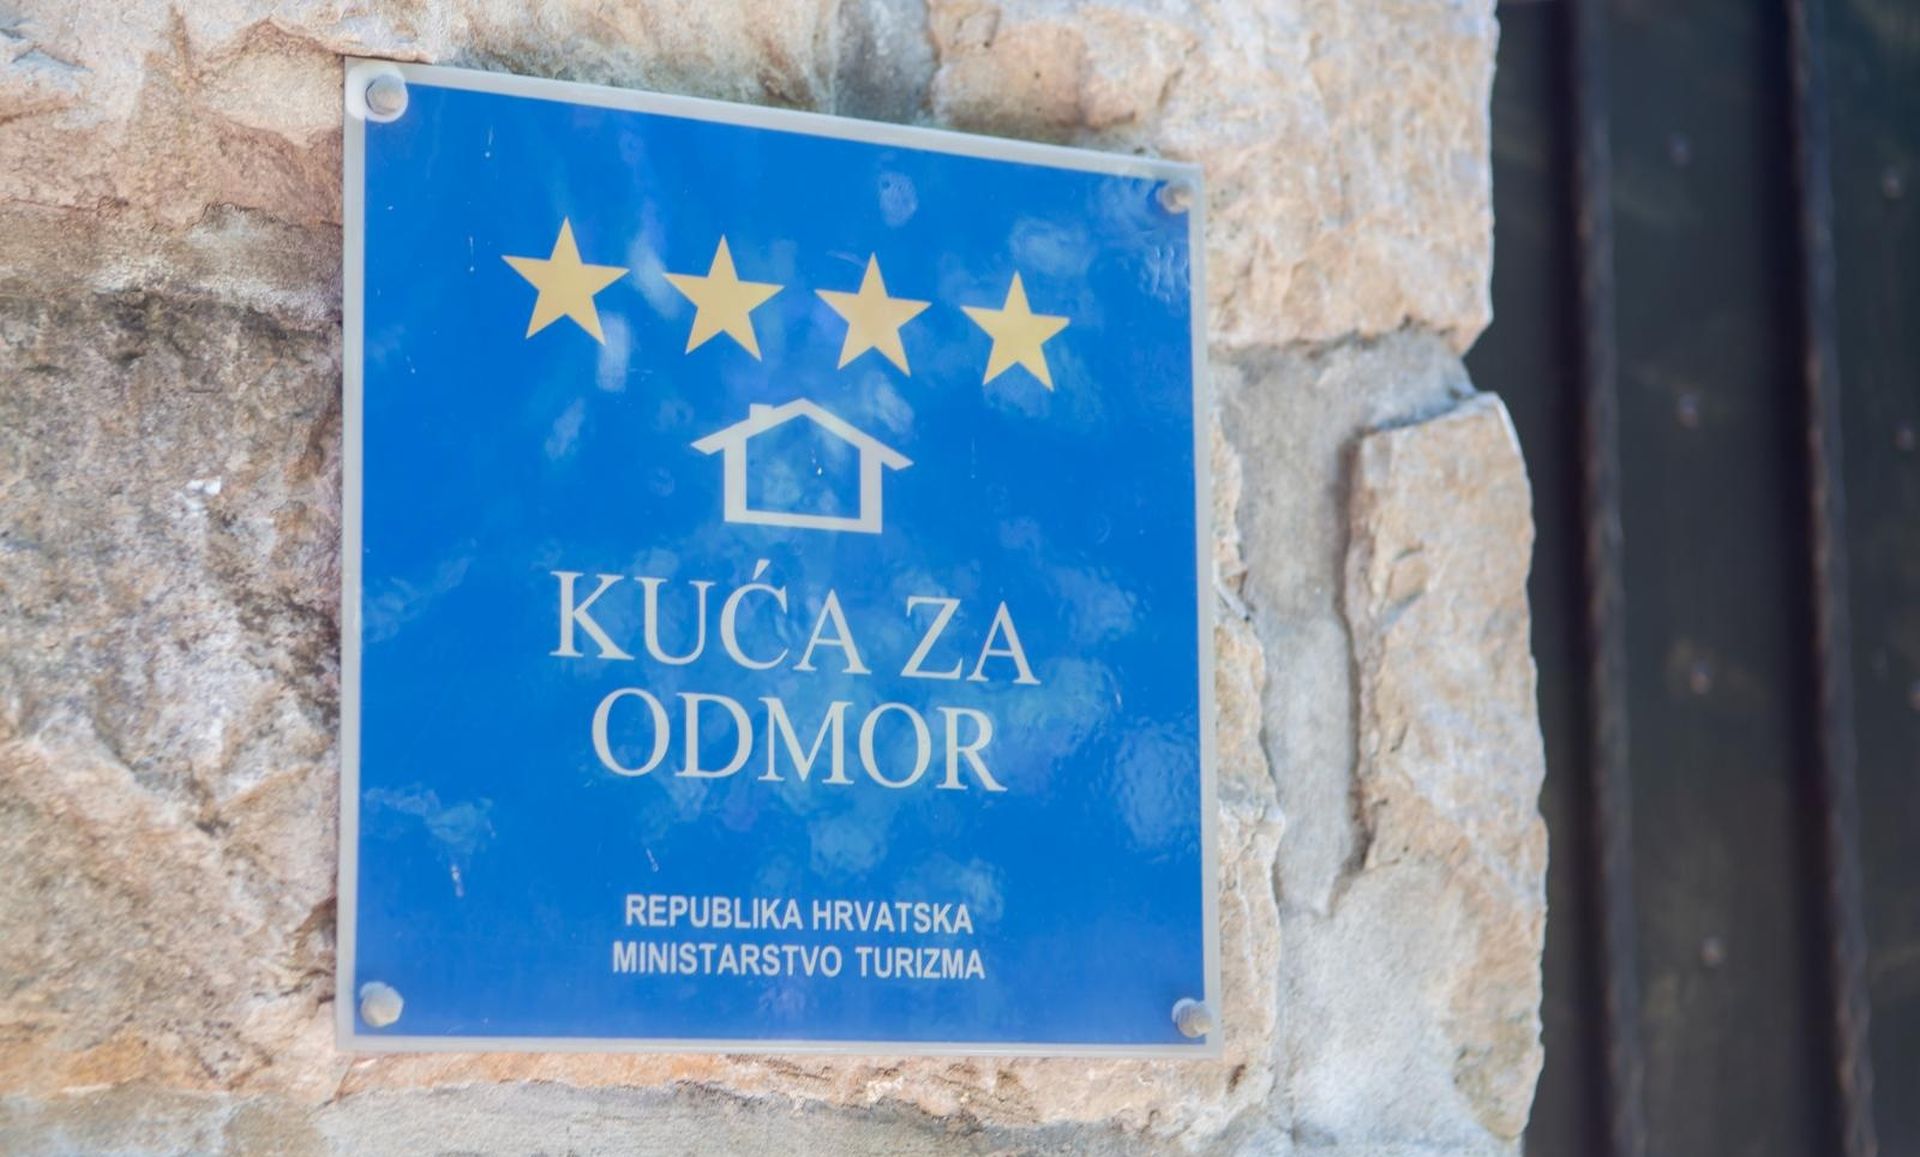 27.05.2018., Dubrovnik - Ilustracija za apartman. Tala s oznakom i kategorizacijom objekta za iznajmljivanje.
Photo: Grgo Jelavic/PIXSELL